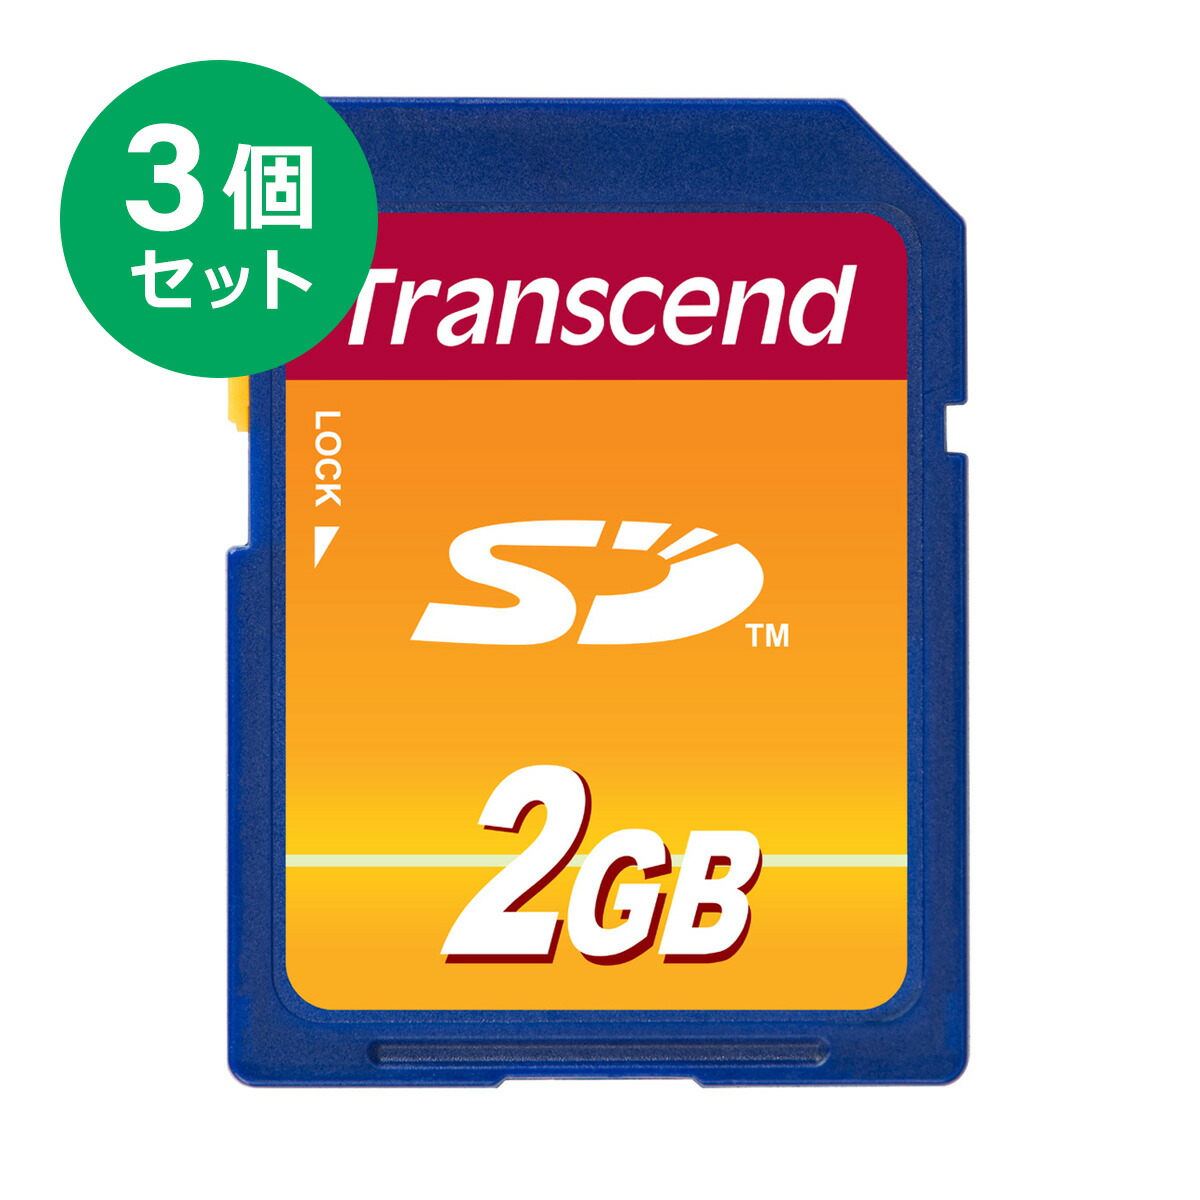 楽天市場 まとめ割 3個セット Transcend Sdカード 2gb 5年保証 Wii対応 Sdメモリーカード 入学 卒業 サンワダイレクト楽天市場店